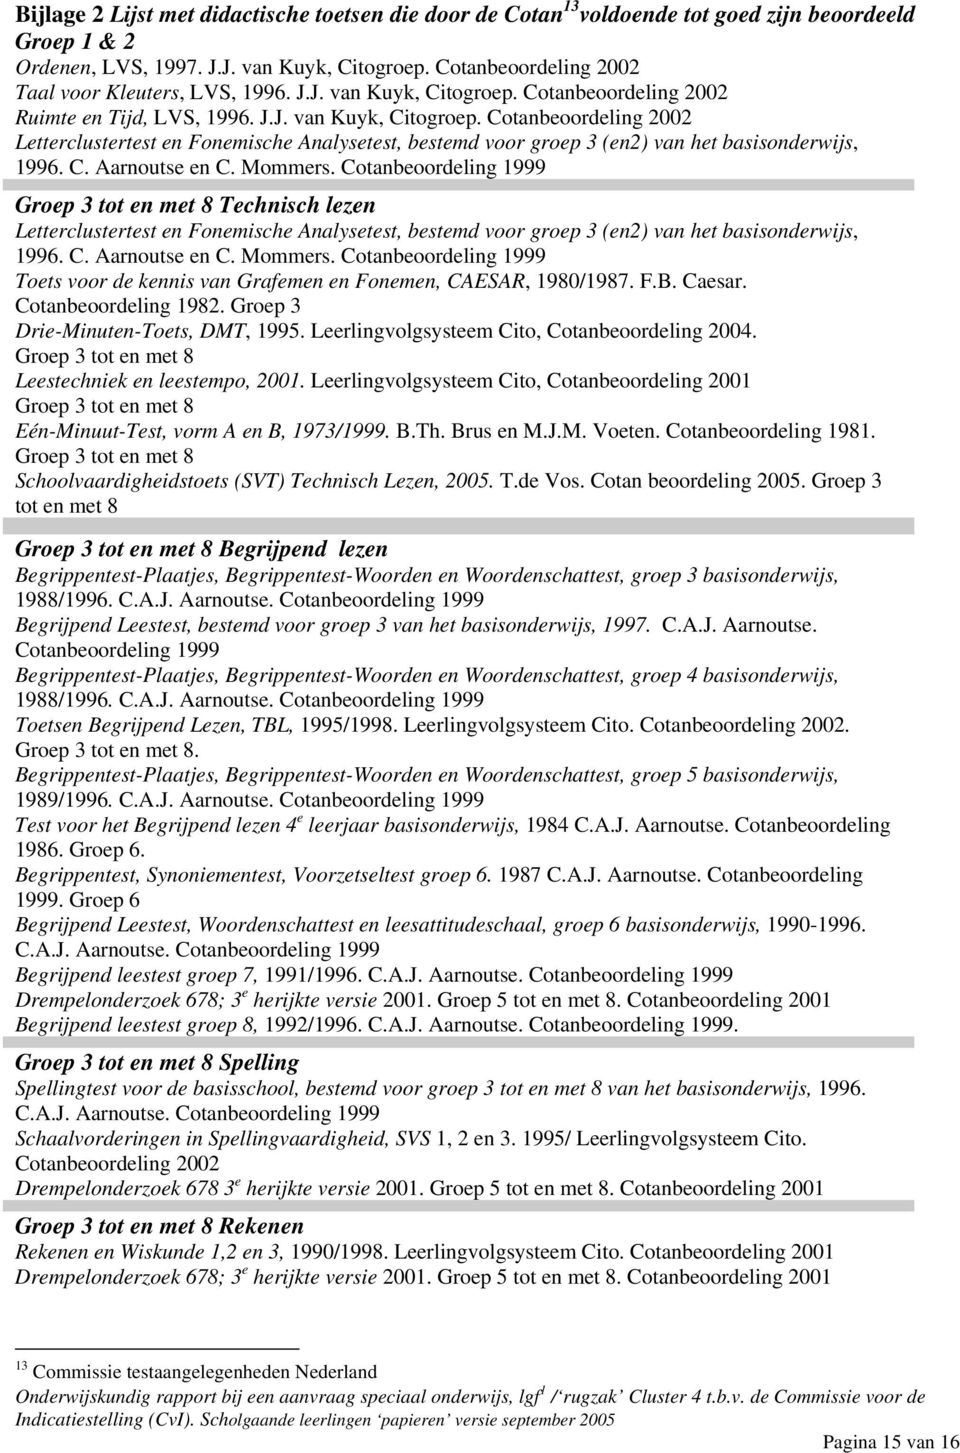 Cotanbeoordeling 2002 Ruimte en Tijd, LVS, 1996. J.J. van Kuyk, Citogroep. Cotanbeoordeling 2002 Letterclustertest en Fonemische Analysetest, bestemd voor groep 3 (en2) van het basisonderwijs, 1996.